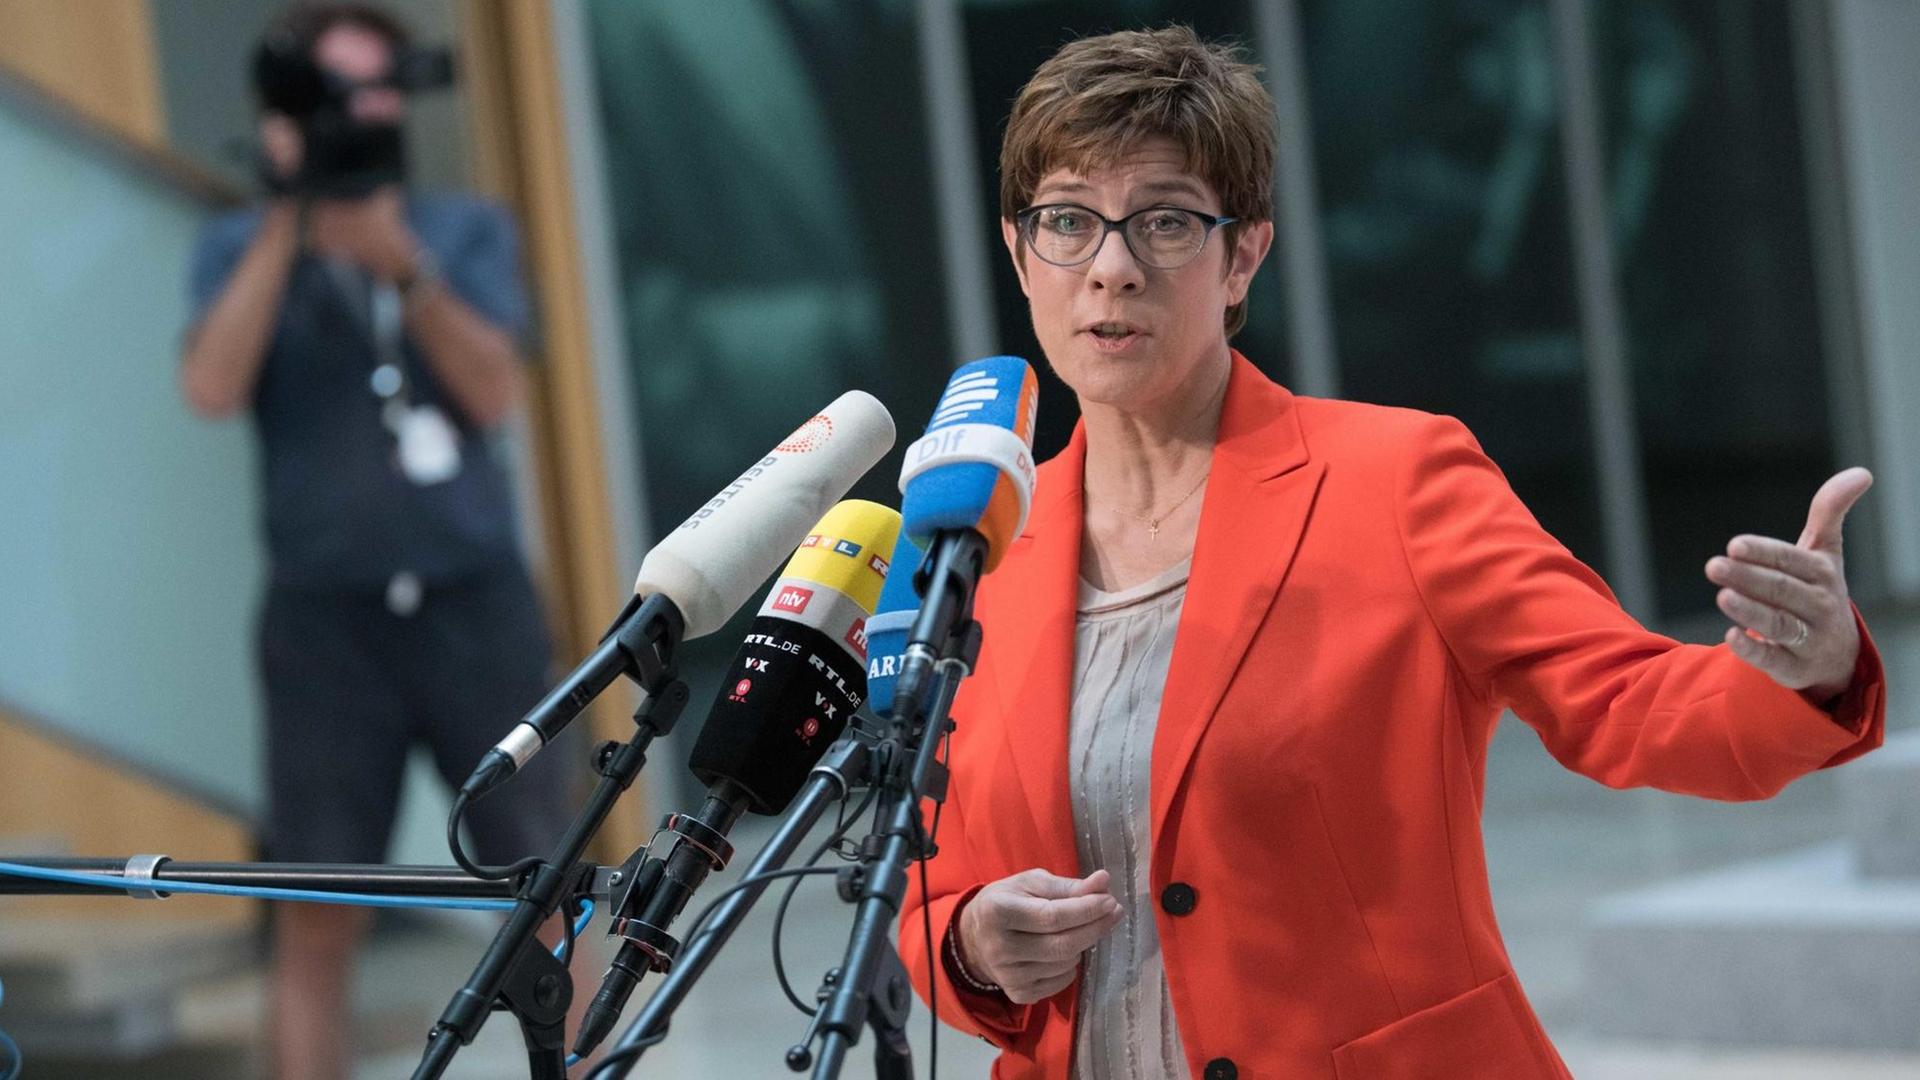 Annegret Kramp-Karrenbauer (CDU), Bundesvorsitzende, äußert sich im Konrad-Adenauer-Haus zum Thema Klimaschutz. Kramp-Karrenbauer plädiert dafür, den Klimaschutz über eine Steuerreform voranzutreiben.